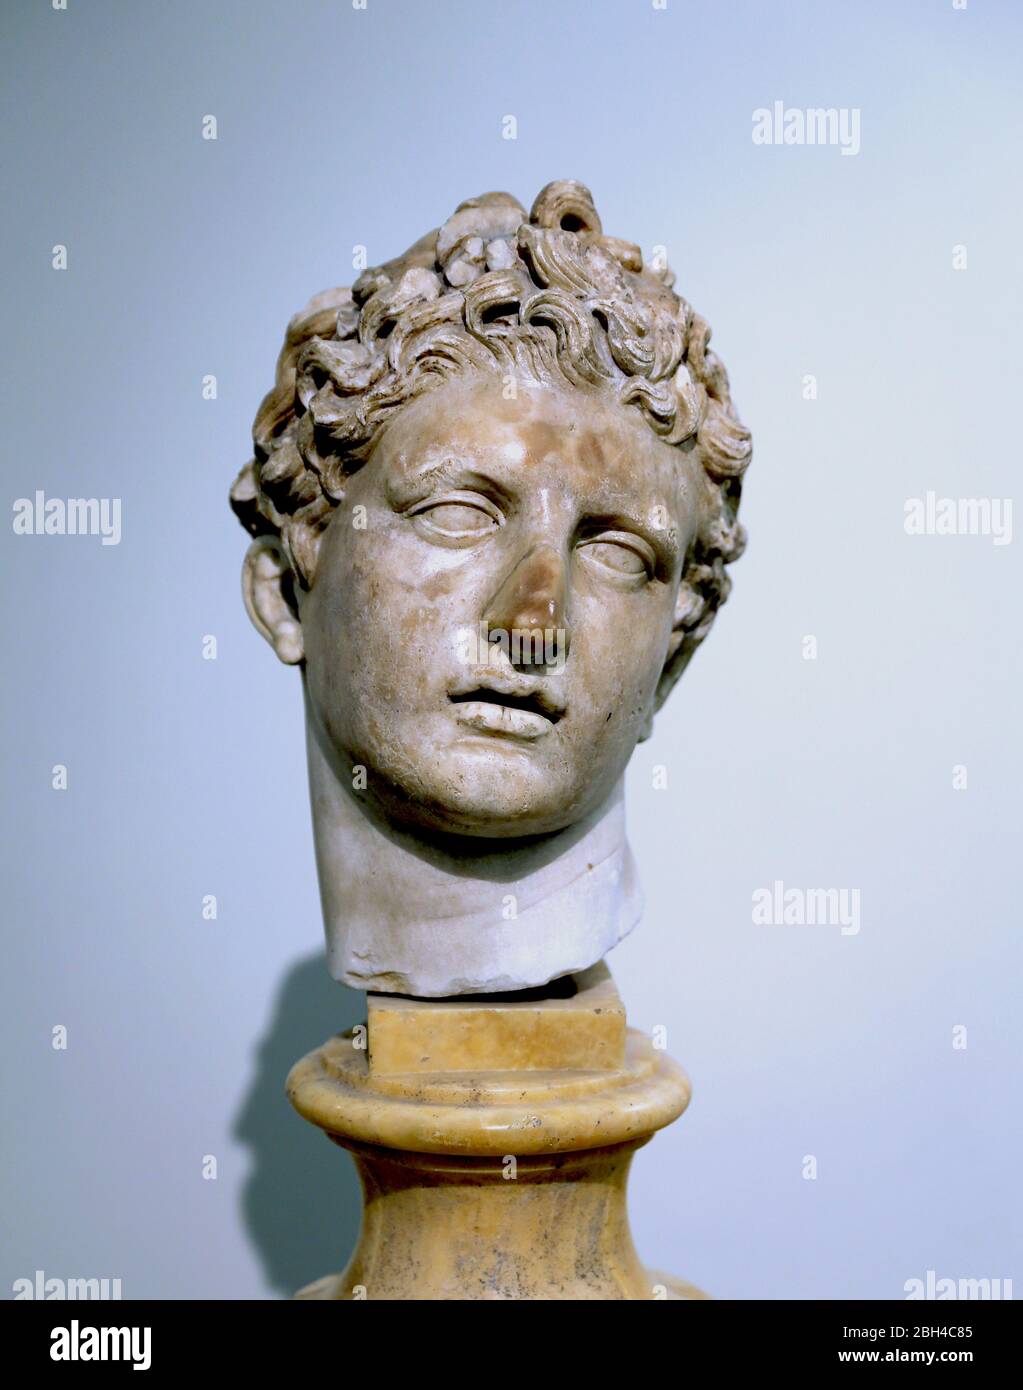 Meleager, testa in marmo, inizio II secolo d.C. Copia romana di un originale greco di Skopas di Paros. Museo Archeologico di Napoli. Italia. Foto Stock